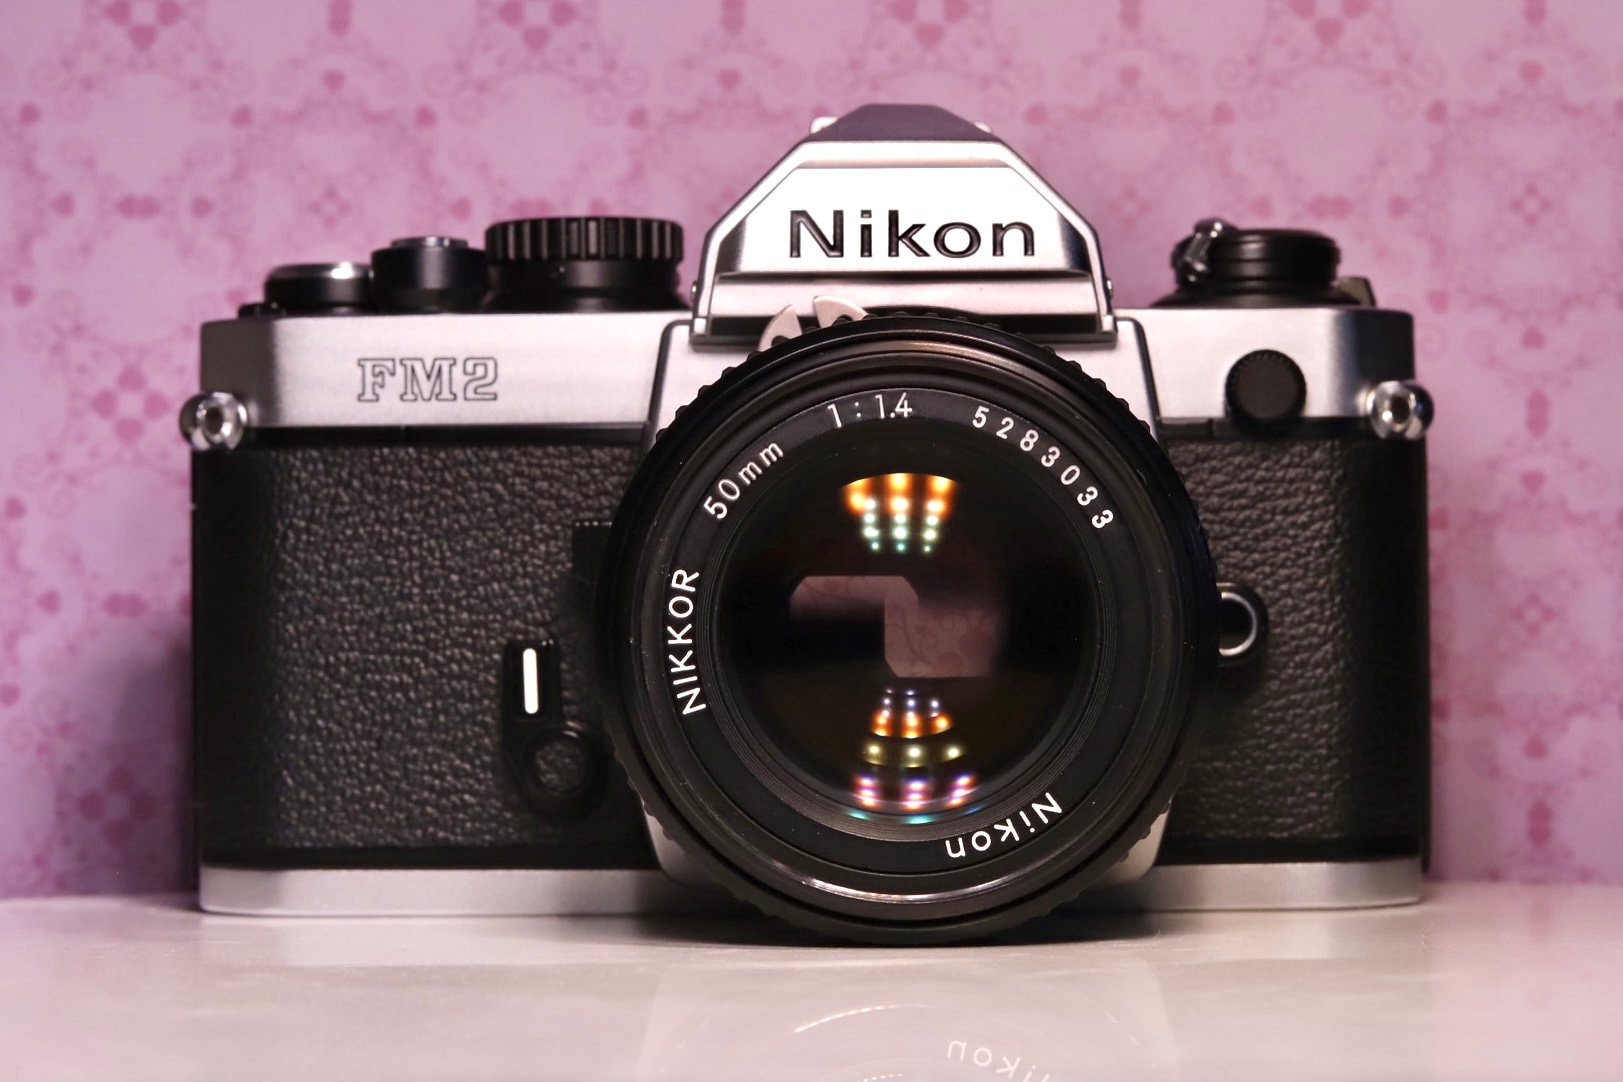 Nikon FM2 with Nikkor 50mm f/1.4 AIS